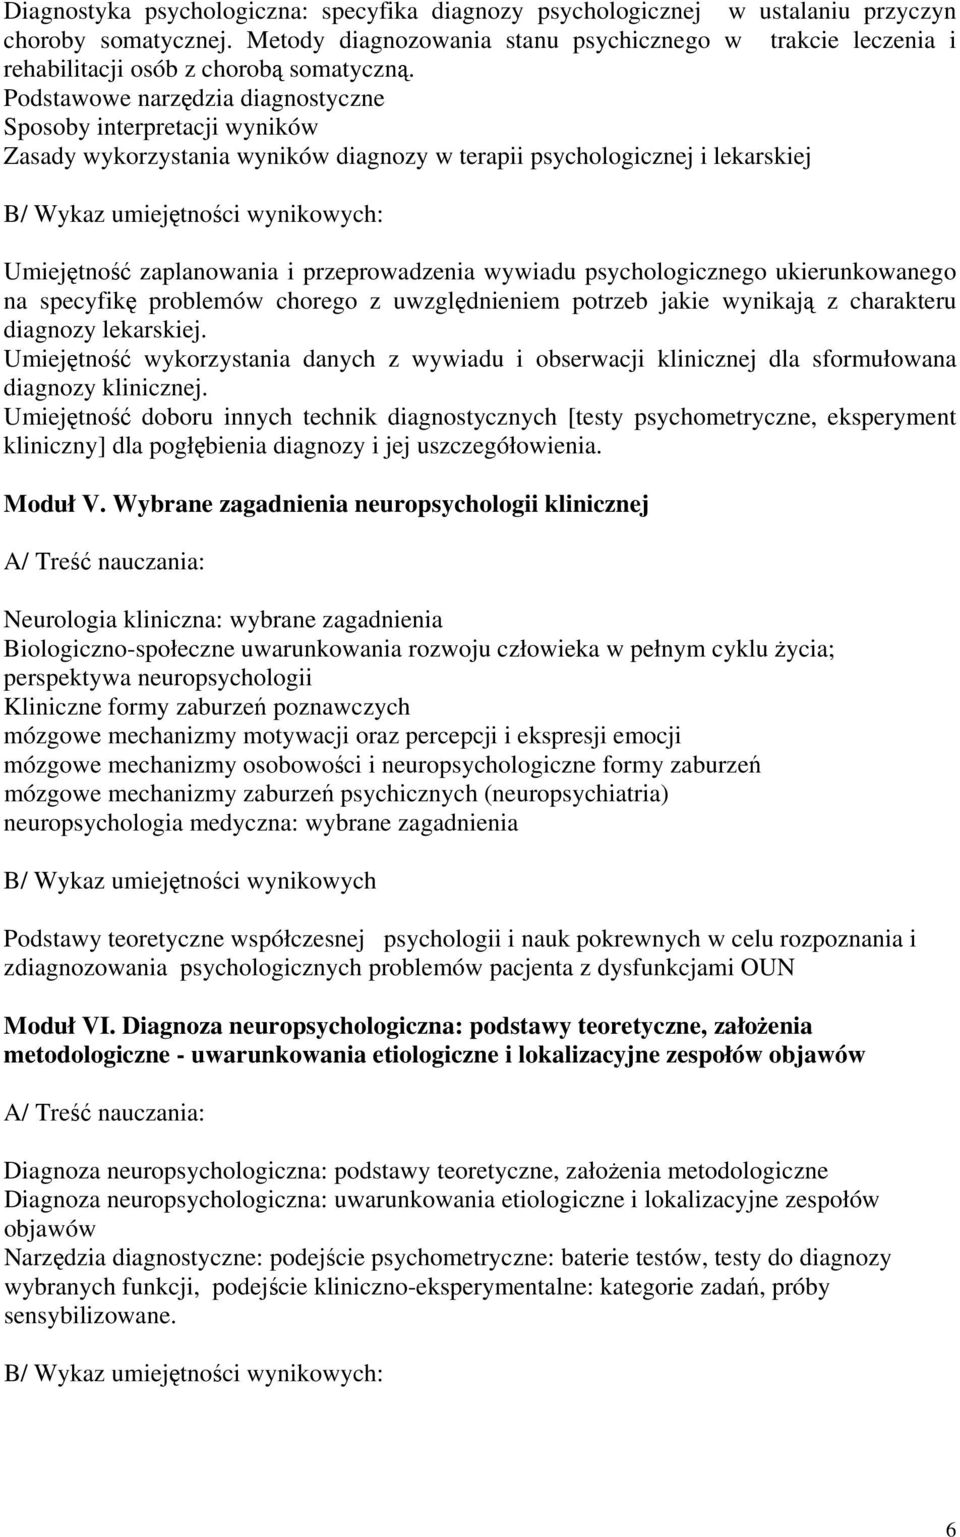 Podstawowe narzędzia diagnostyczne Sposoby interpretacji wyników Zasady wykorzystania wyników diagnozy w terapii psychologicznej i lekarskiej B/ Wykaz umiejętności wynikowych: Umiejętność